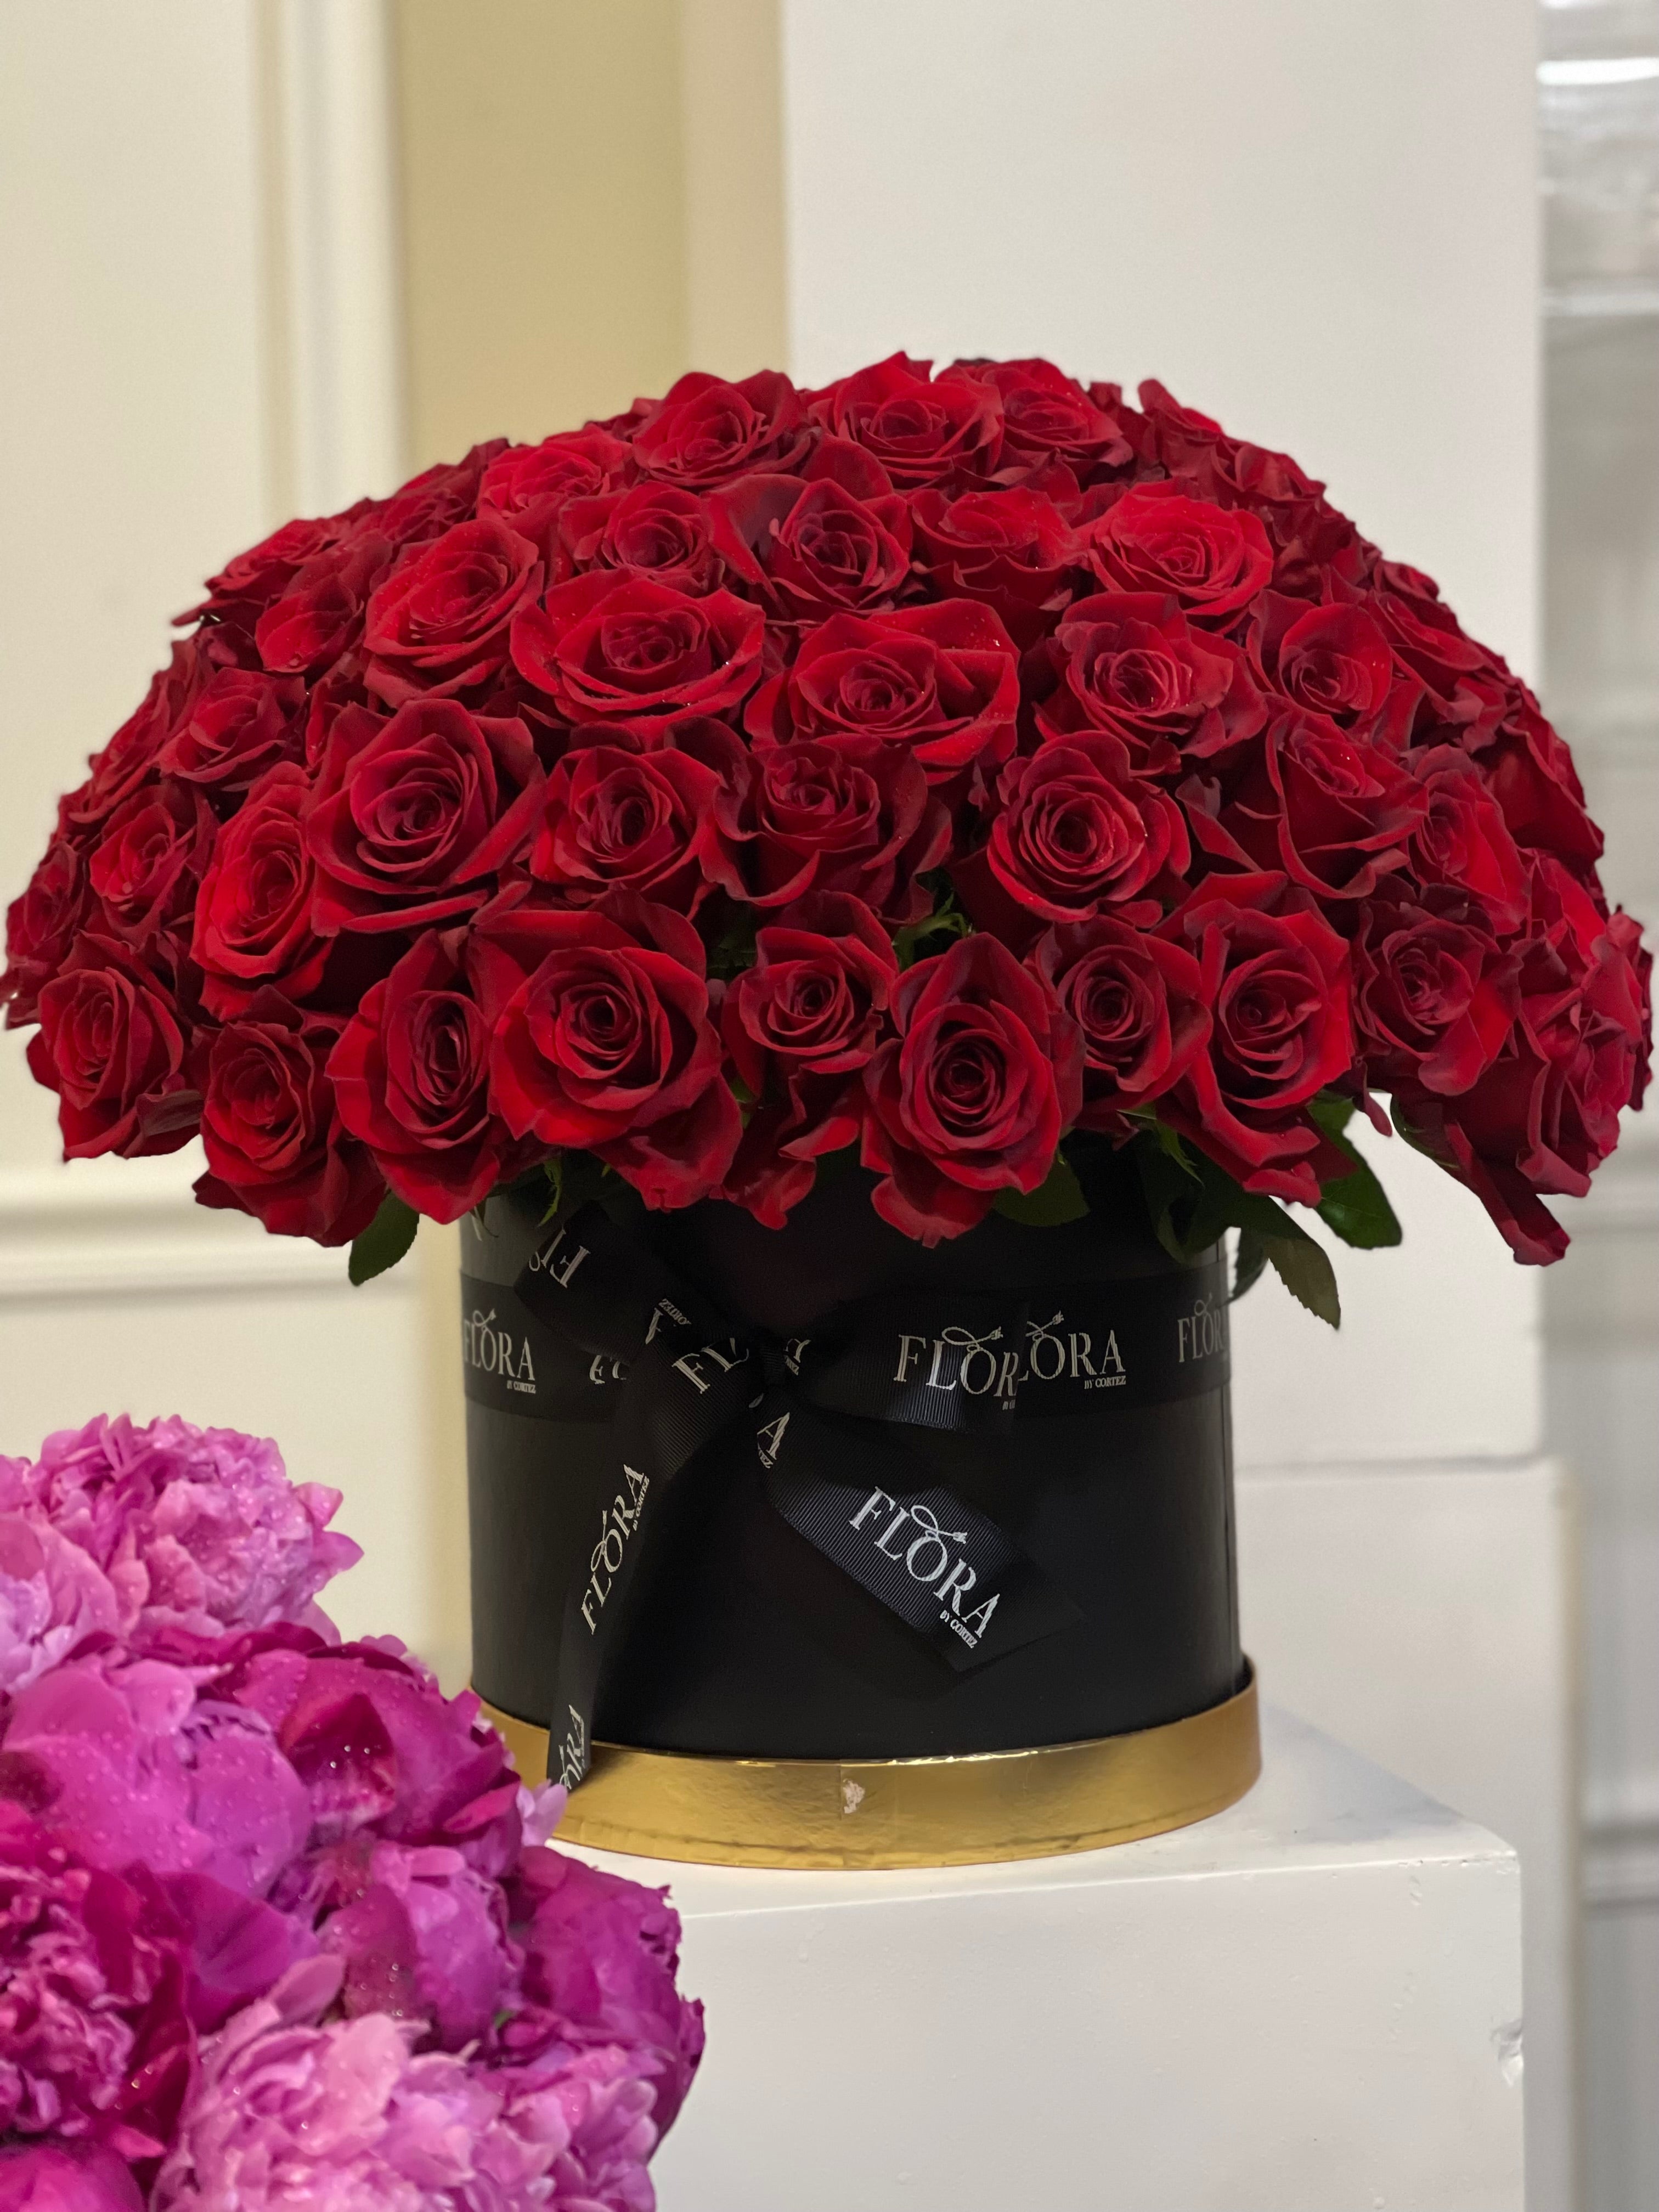 Lovely Roses Box!